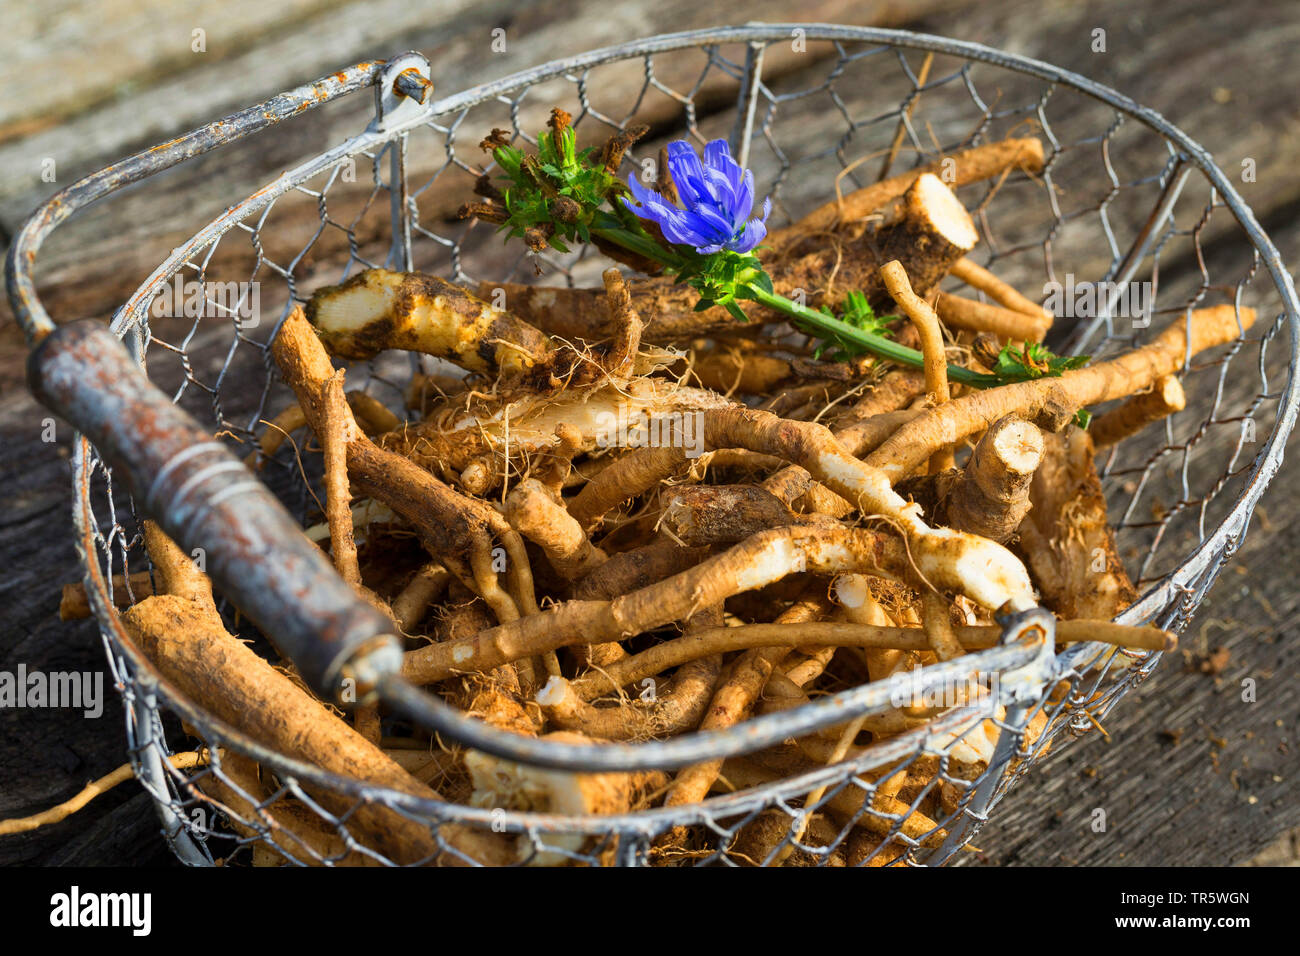 Les marins bleu commun, chicorée, wild succory (Cichorium intybus), racines dans un panier, Allemagne Banque D'Images